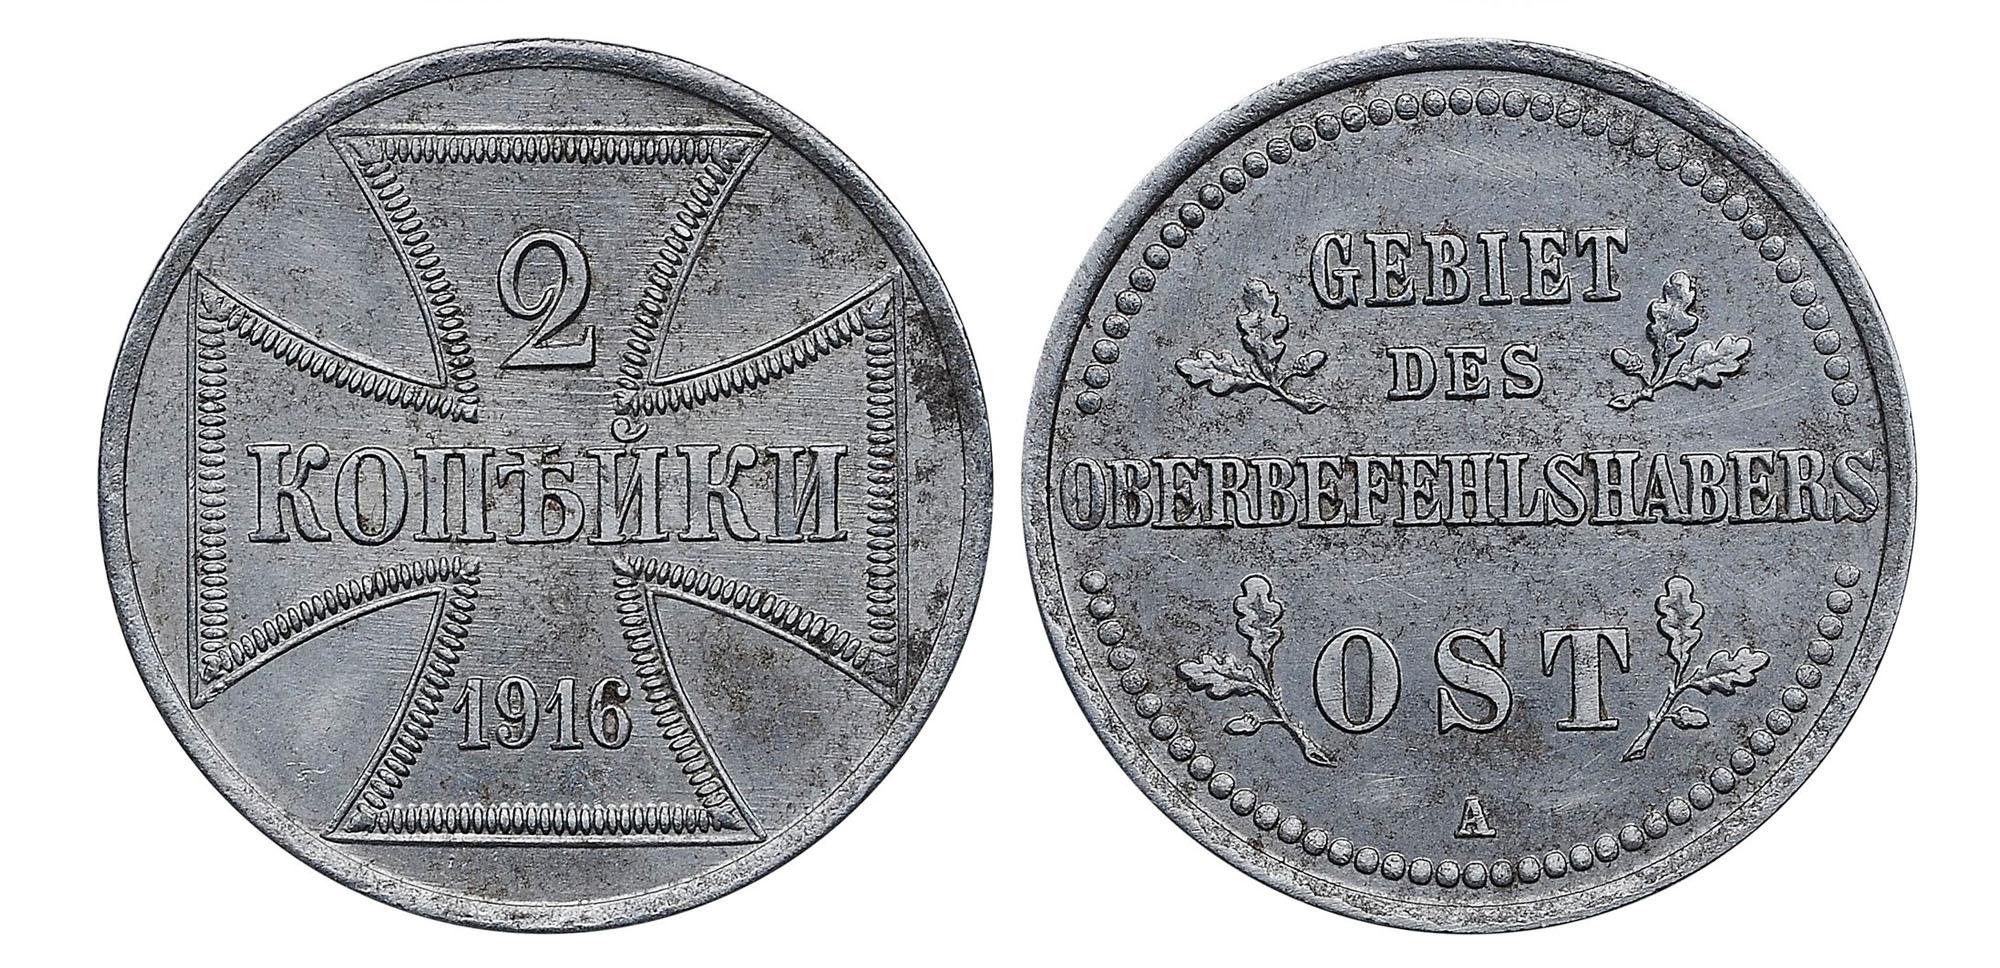 25 рублей 1896 года 